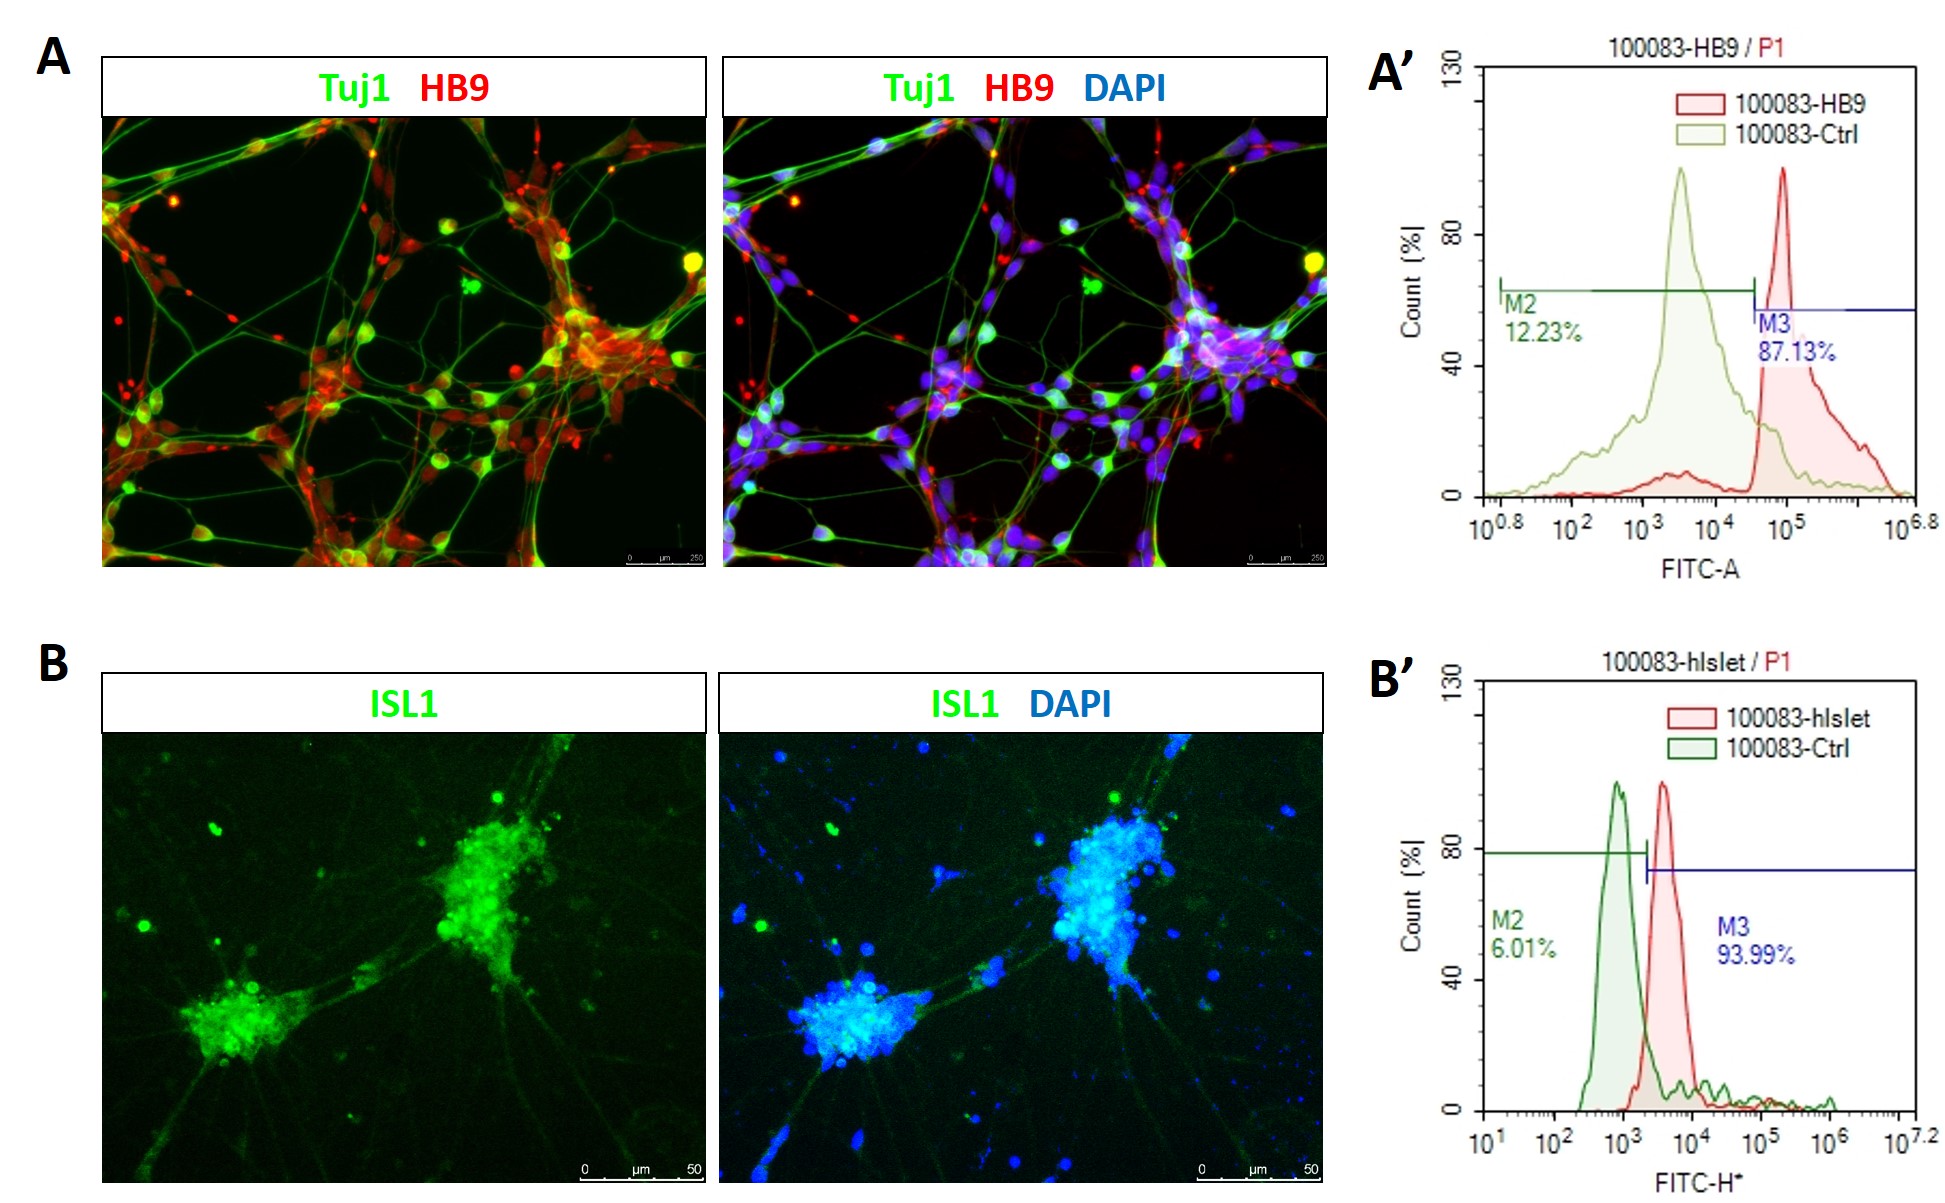 iPSC-derived motor neurons